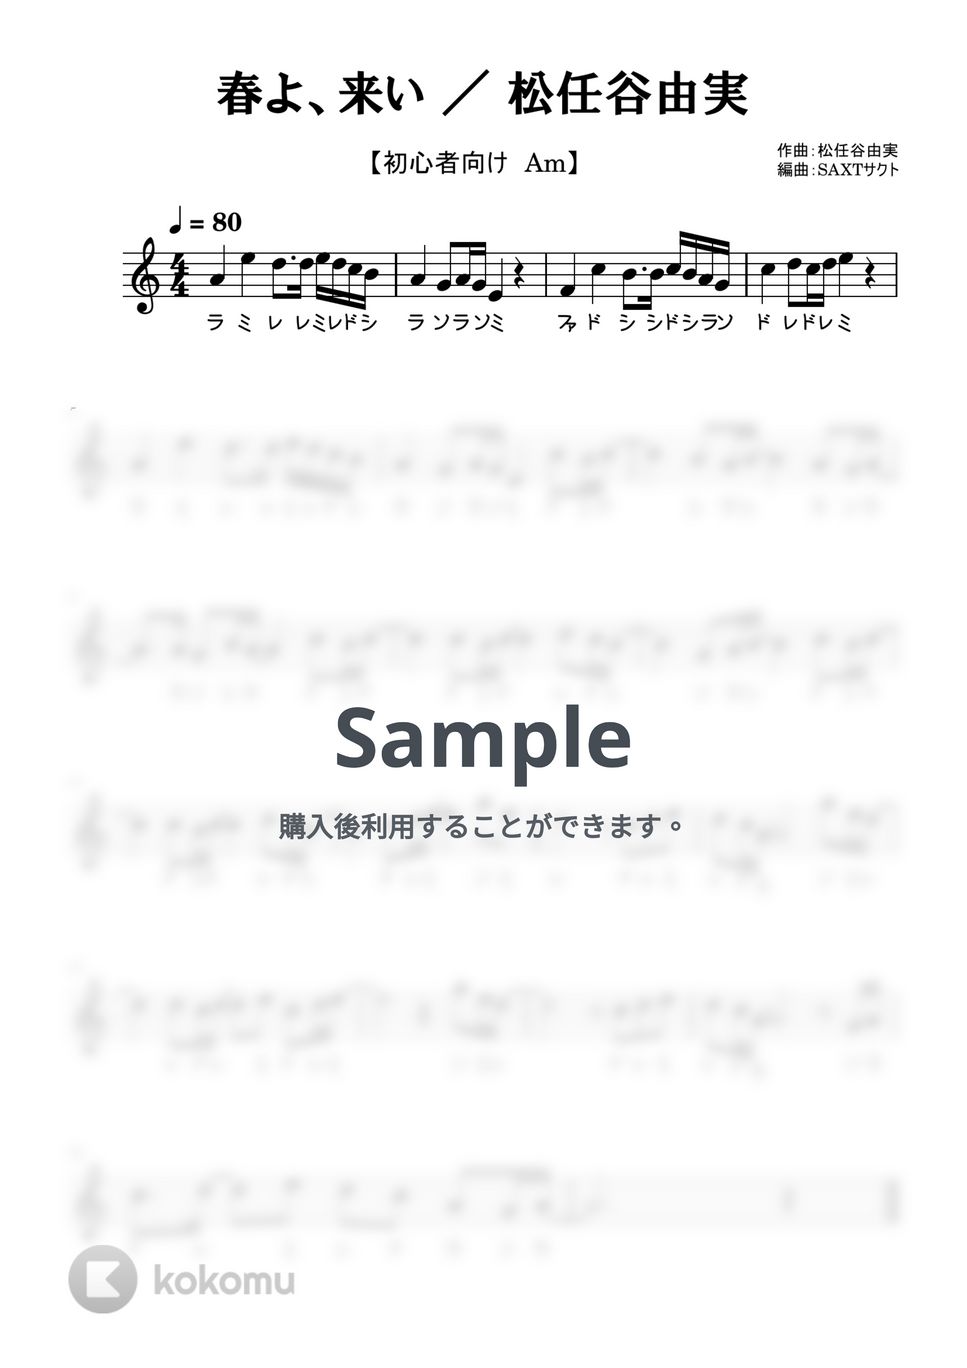 松任谷由実 - 春よ、来い (めちゃラク譜) by SAXT